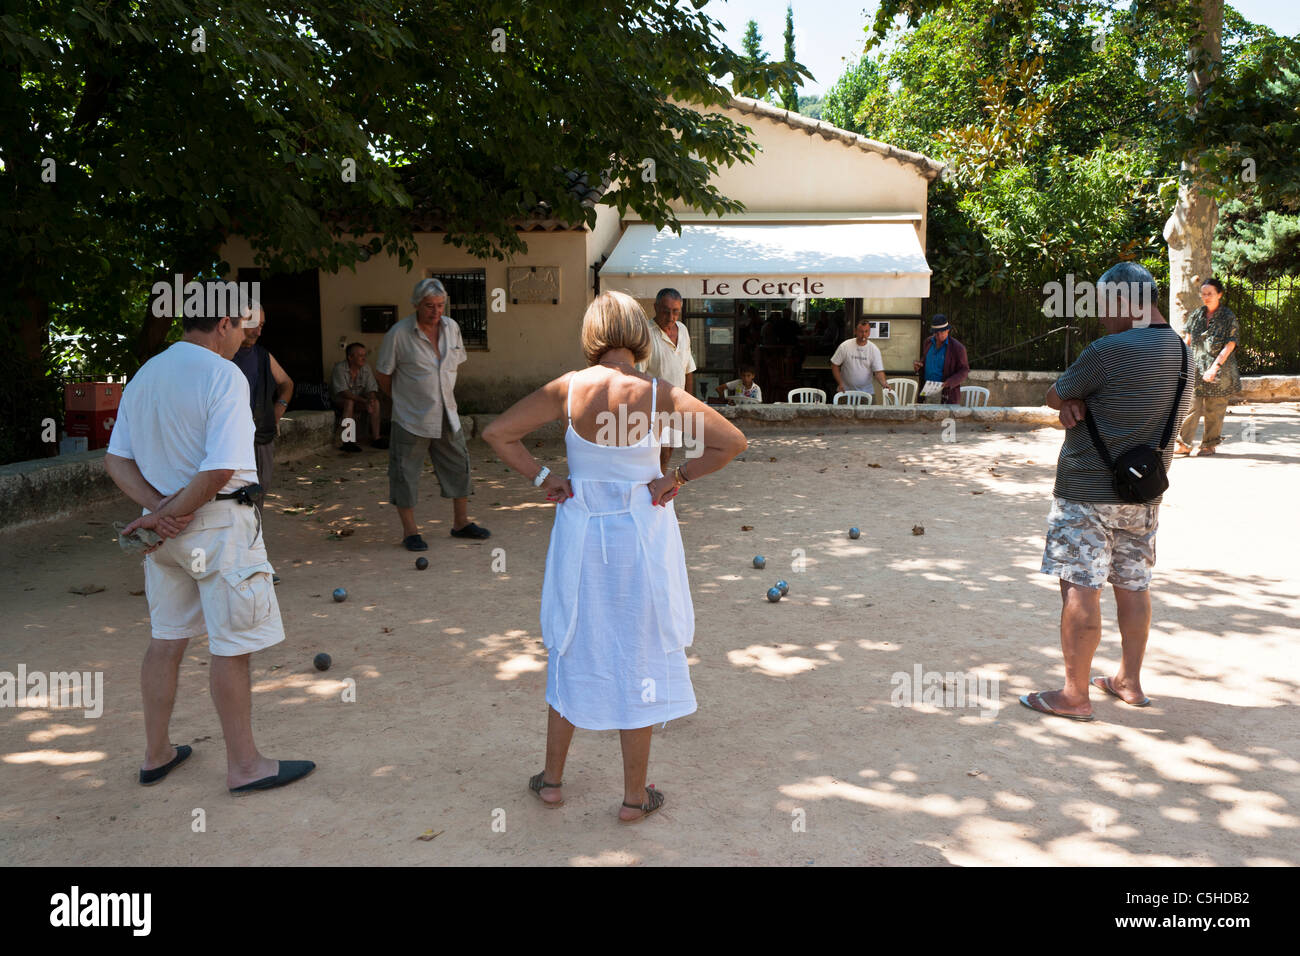 Femme jouant aux boules ou à la pétanque avec les hommes, St Paul de Vence, Provence, France Banque D'Images